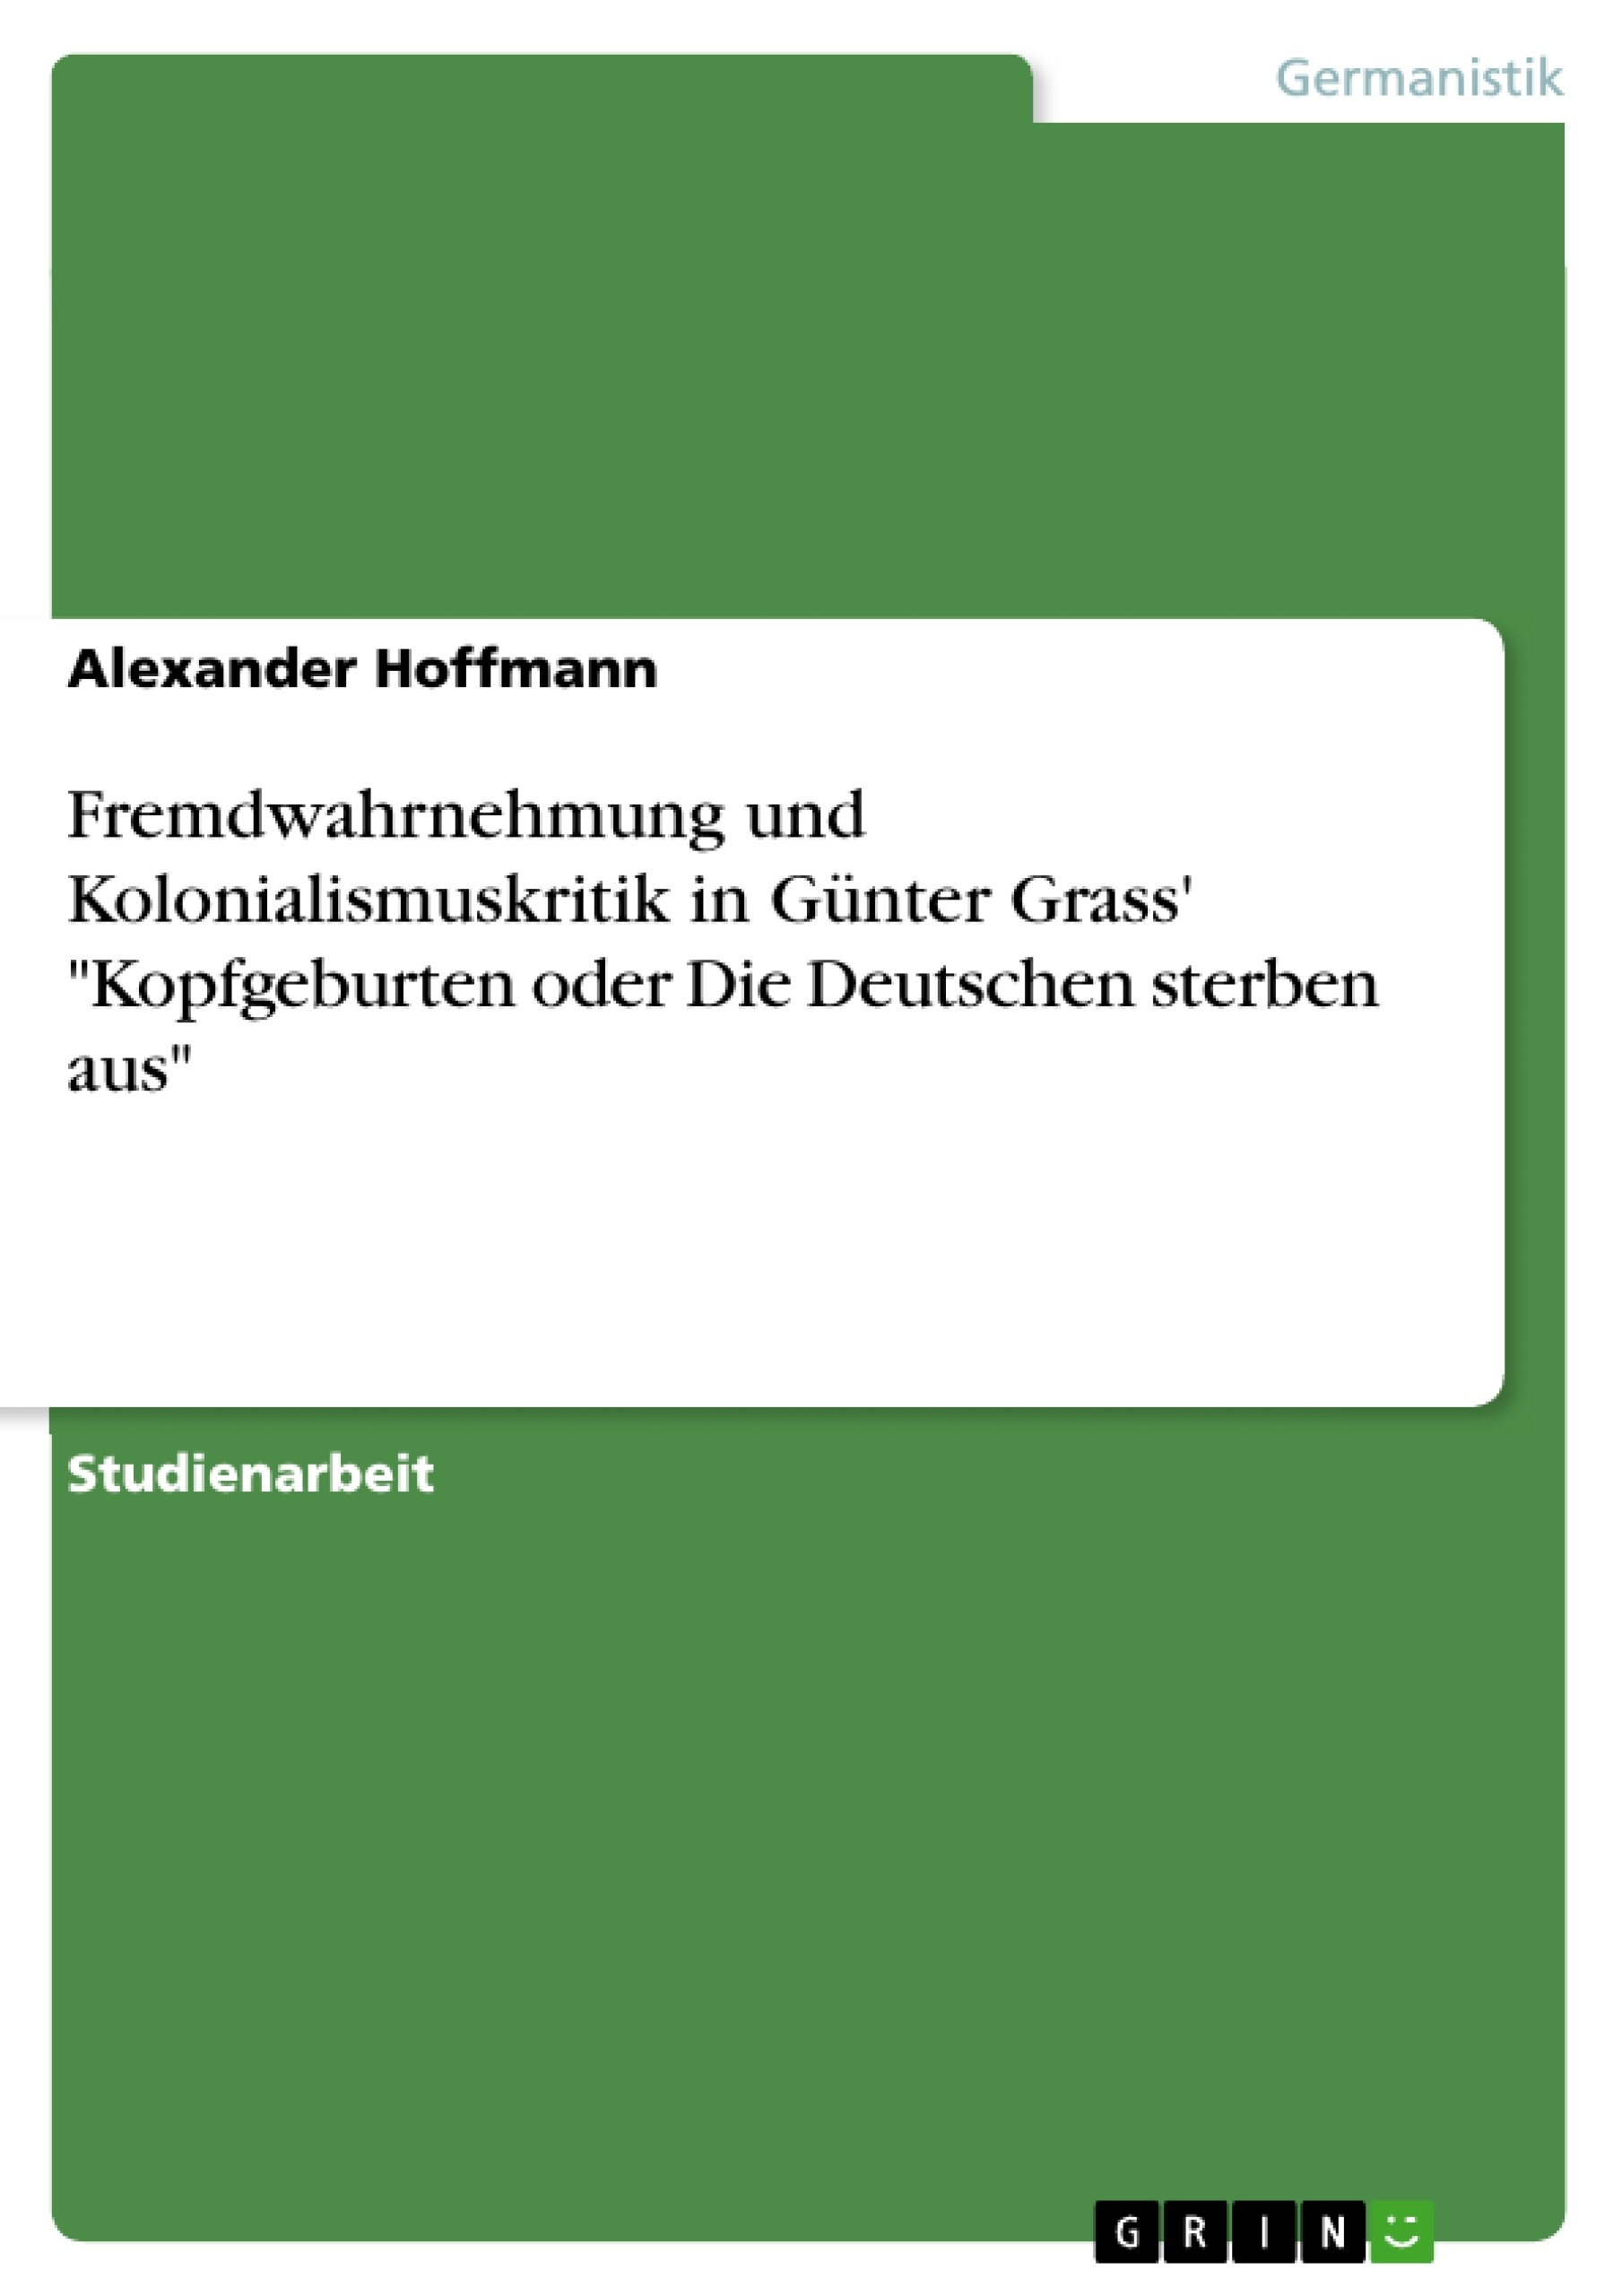 Title: Fremdwahrnehmung und Kolonialismuskritik in Günter Grass' "Kopfgeburten oder Die Deutschen sterben aus"